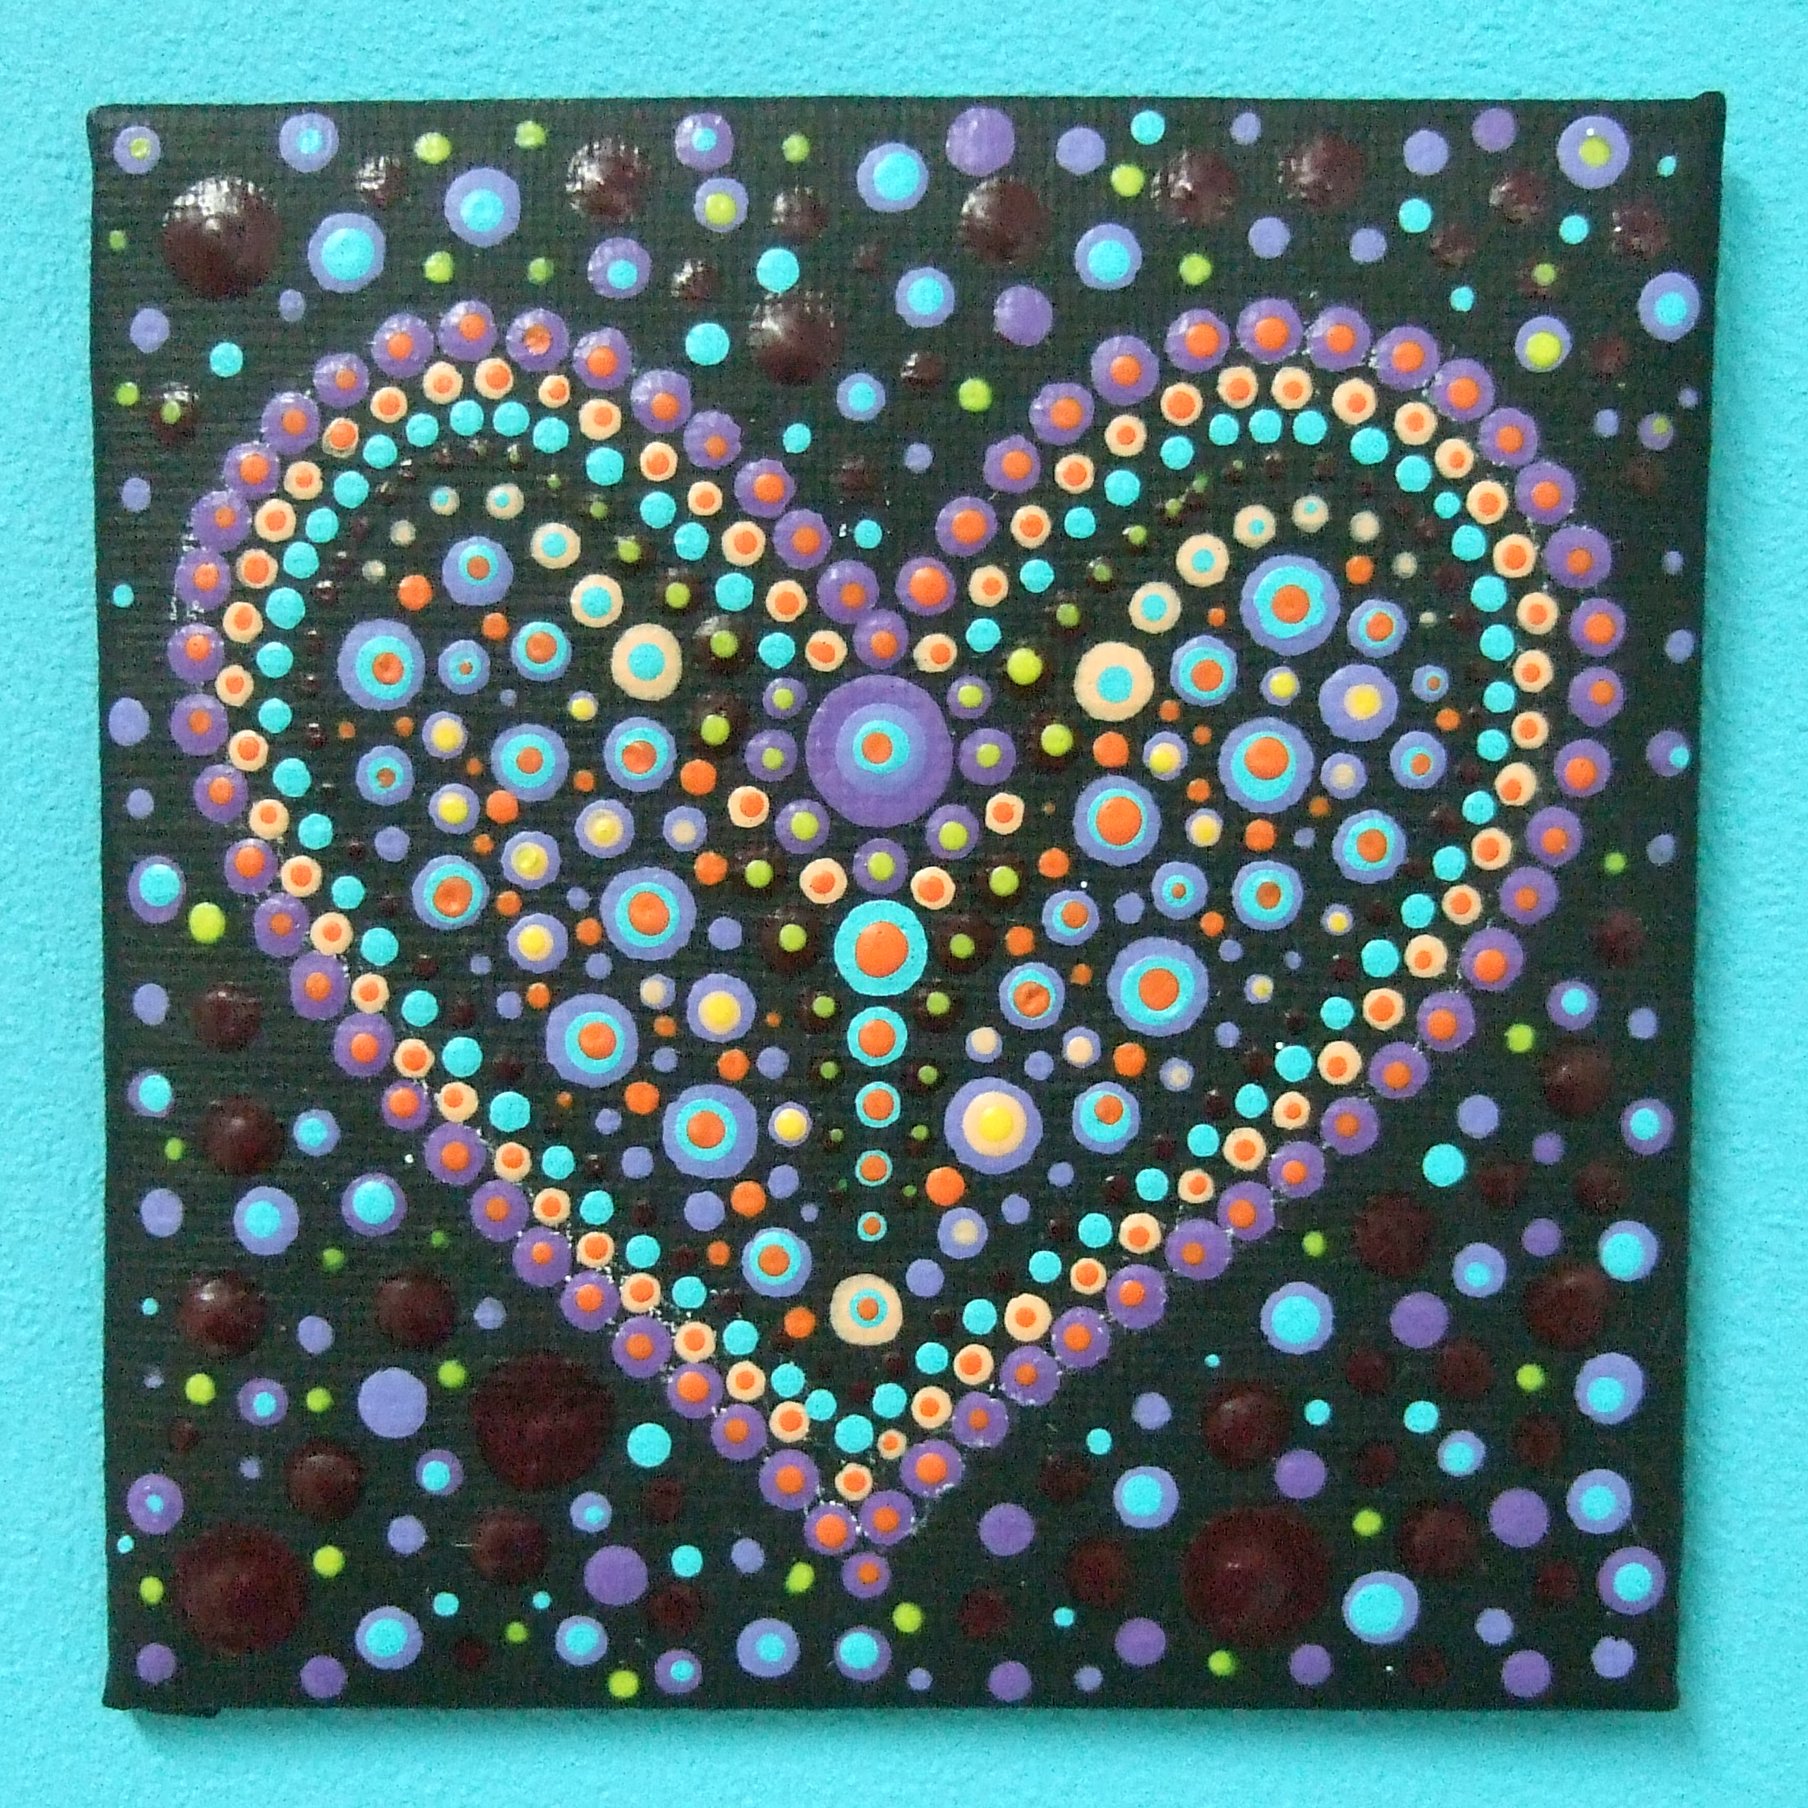 Vierkante dot painting met een gestippeld hartje en een gestippelde achtergrond. De ondergrond is zwart.